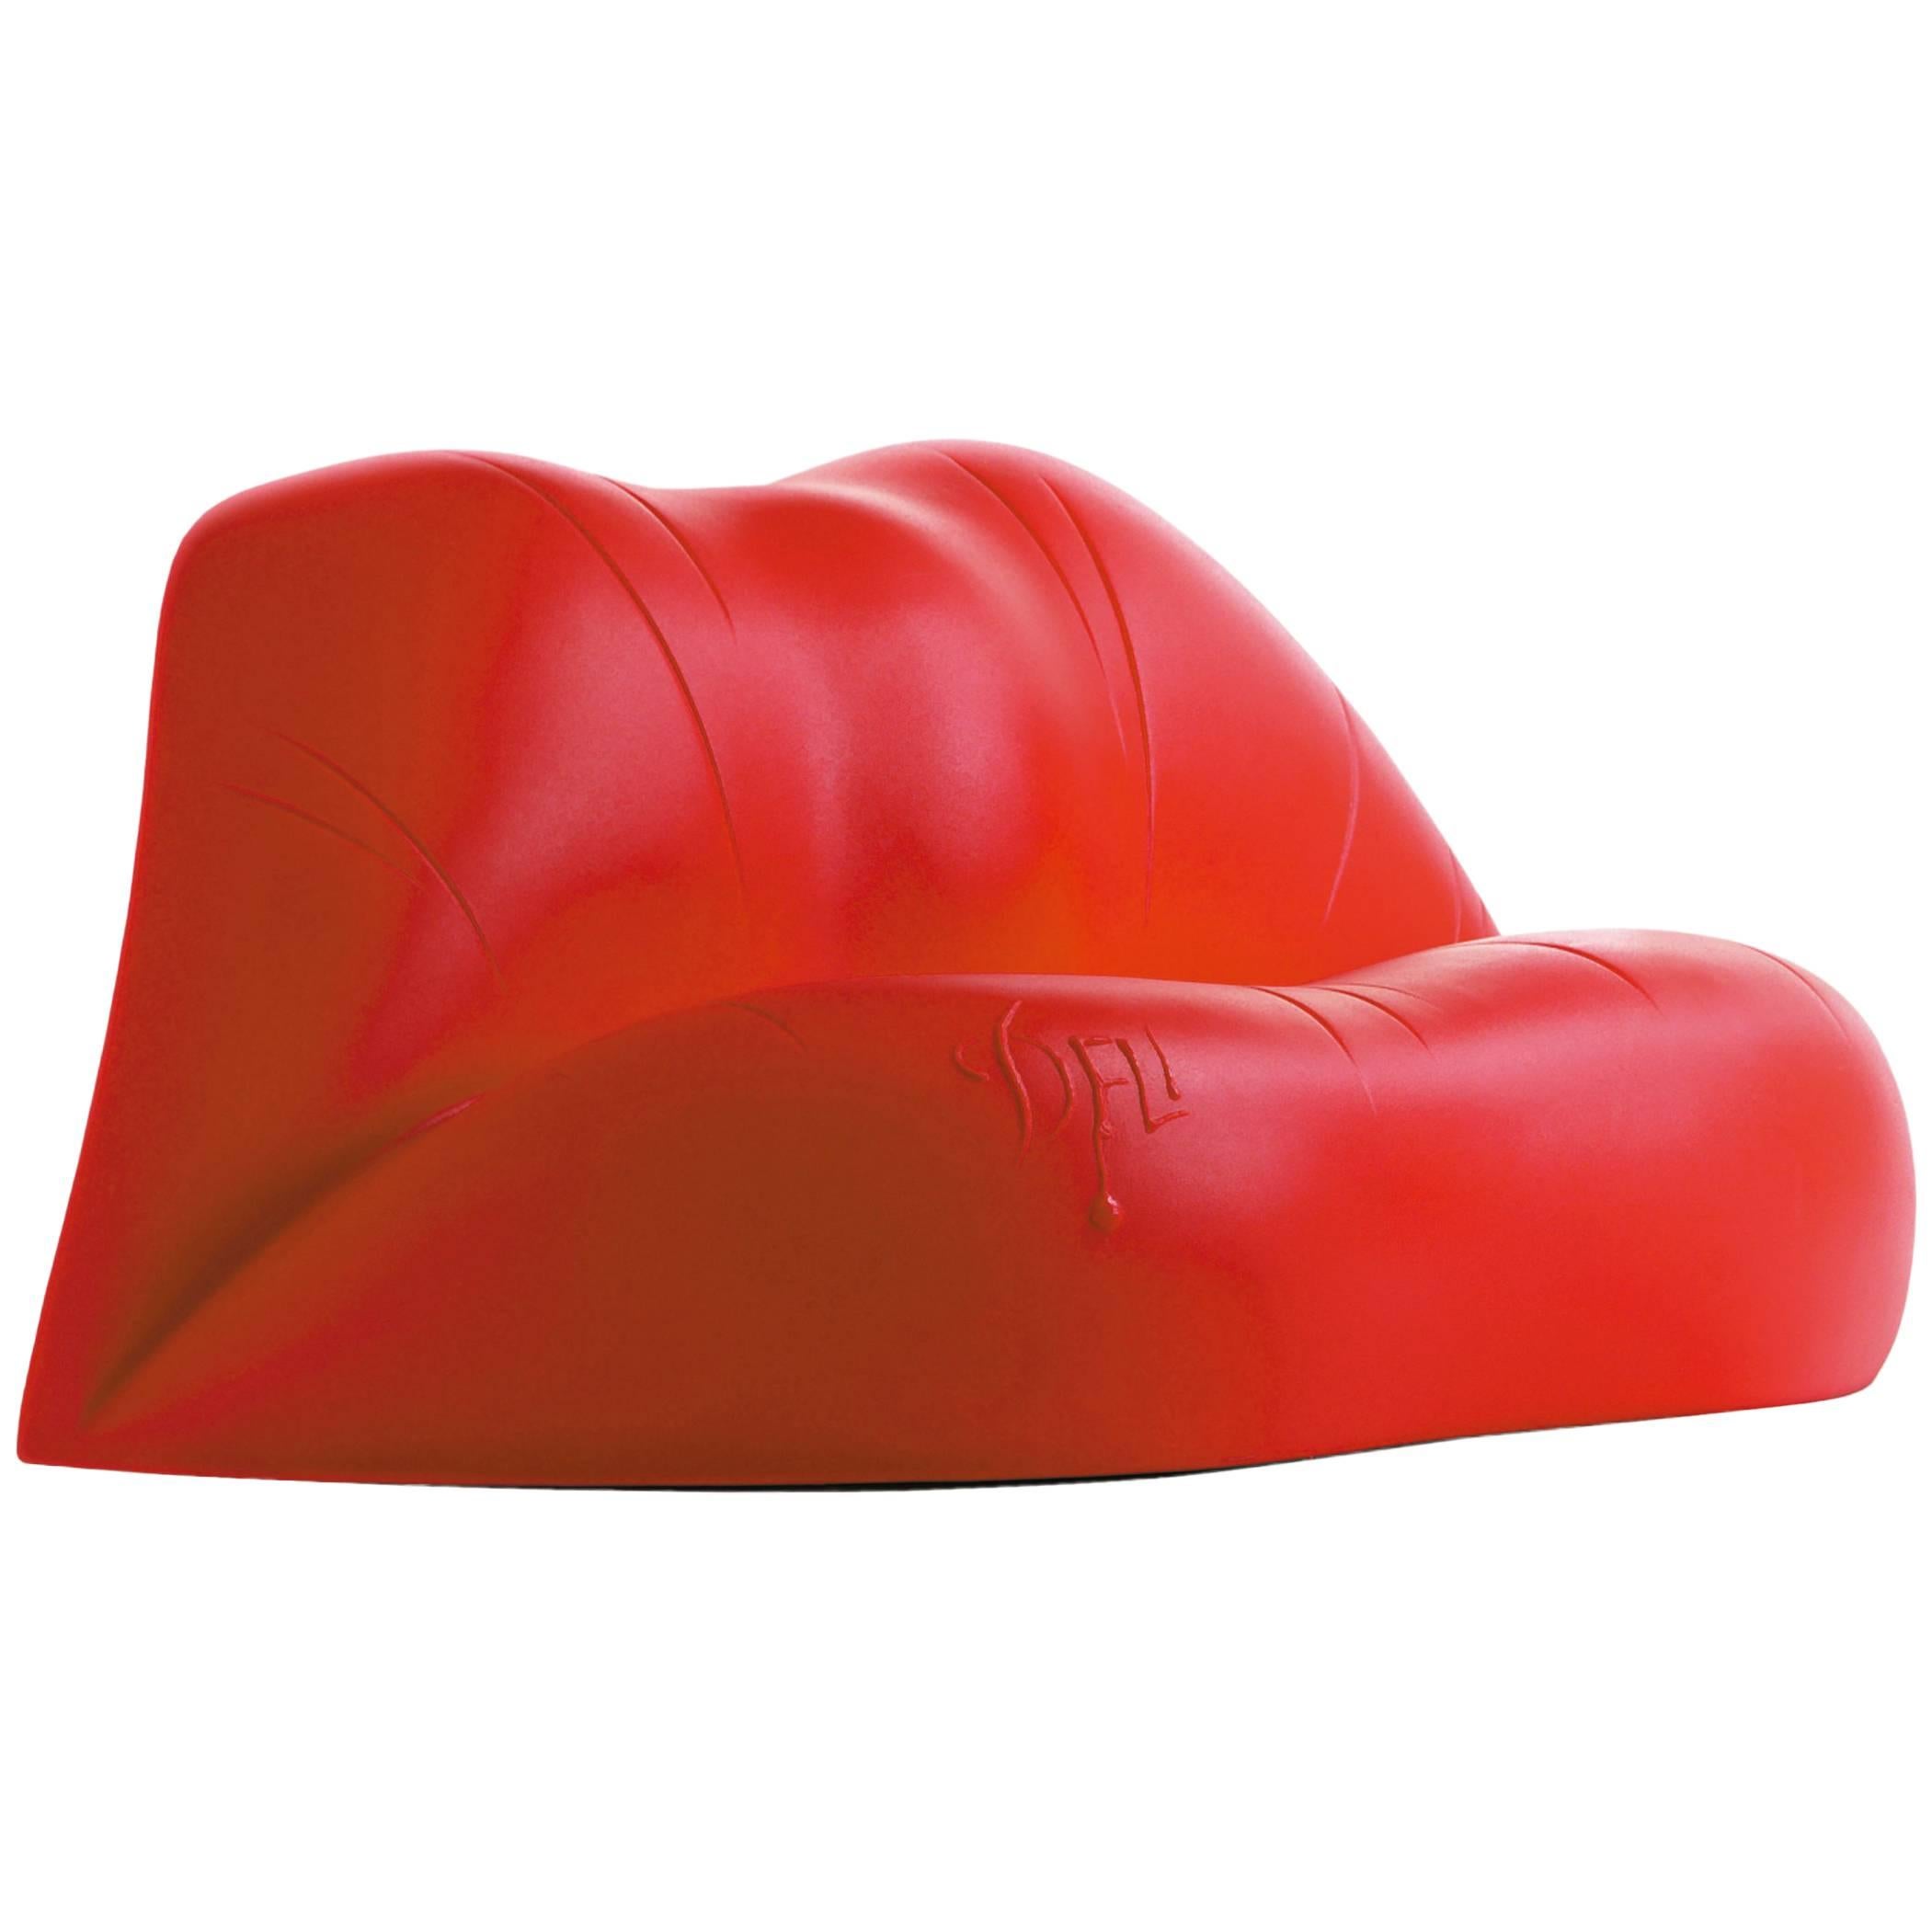 Dalilips conçu par Salvador Dali pour BD design.

Canapé deux places fabriqué en polyéthylène avec un procédé de moulage par rotation. Couleur rouge.

Mesures : 100 x 170 x 73 H cm.

Il s'agit du célèbre canapé en forme de bouche que l'artiste a